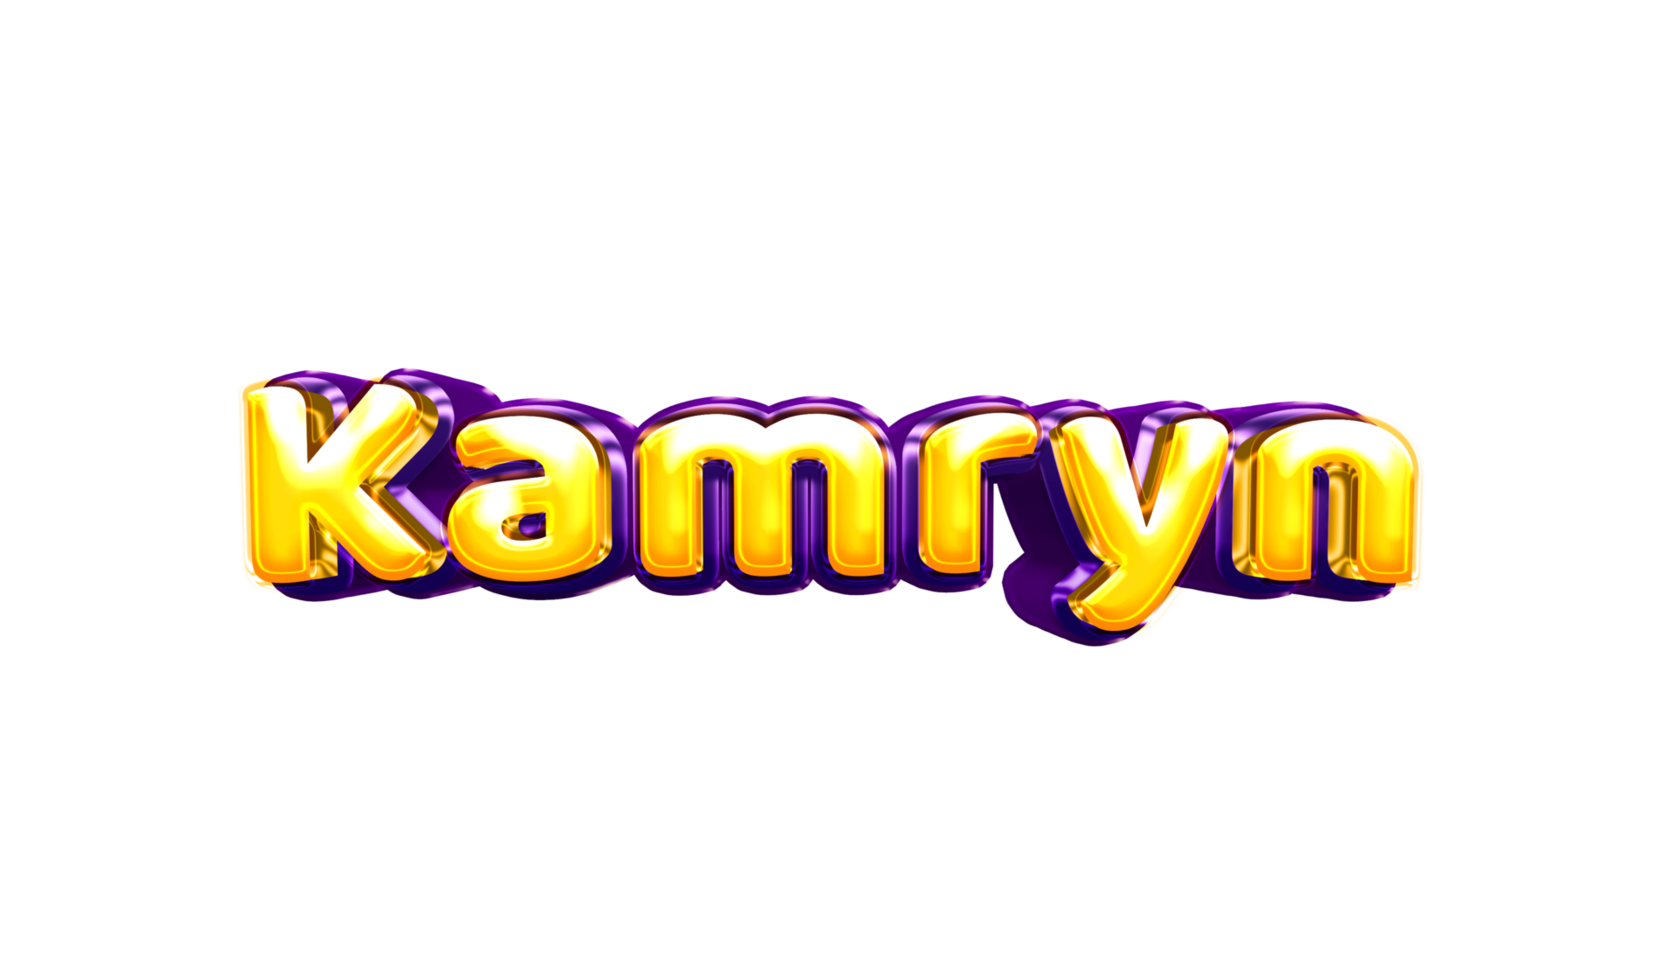 etiqueta engomada del nombre de las niñas coloridas fiesta globo cumpleaños helio aire llamativas amarillas moradas separar kamryn png